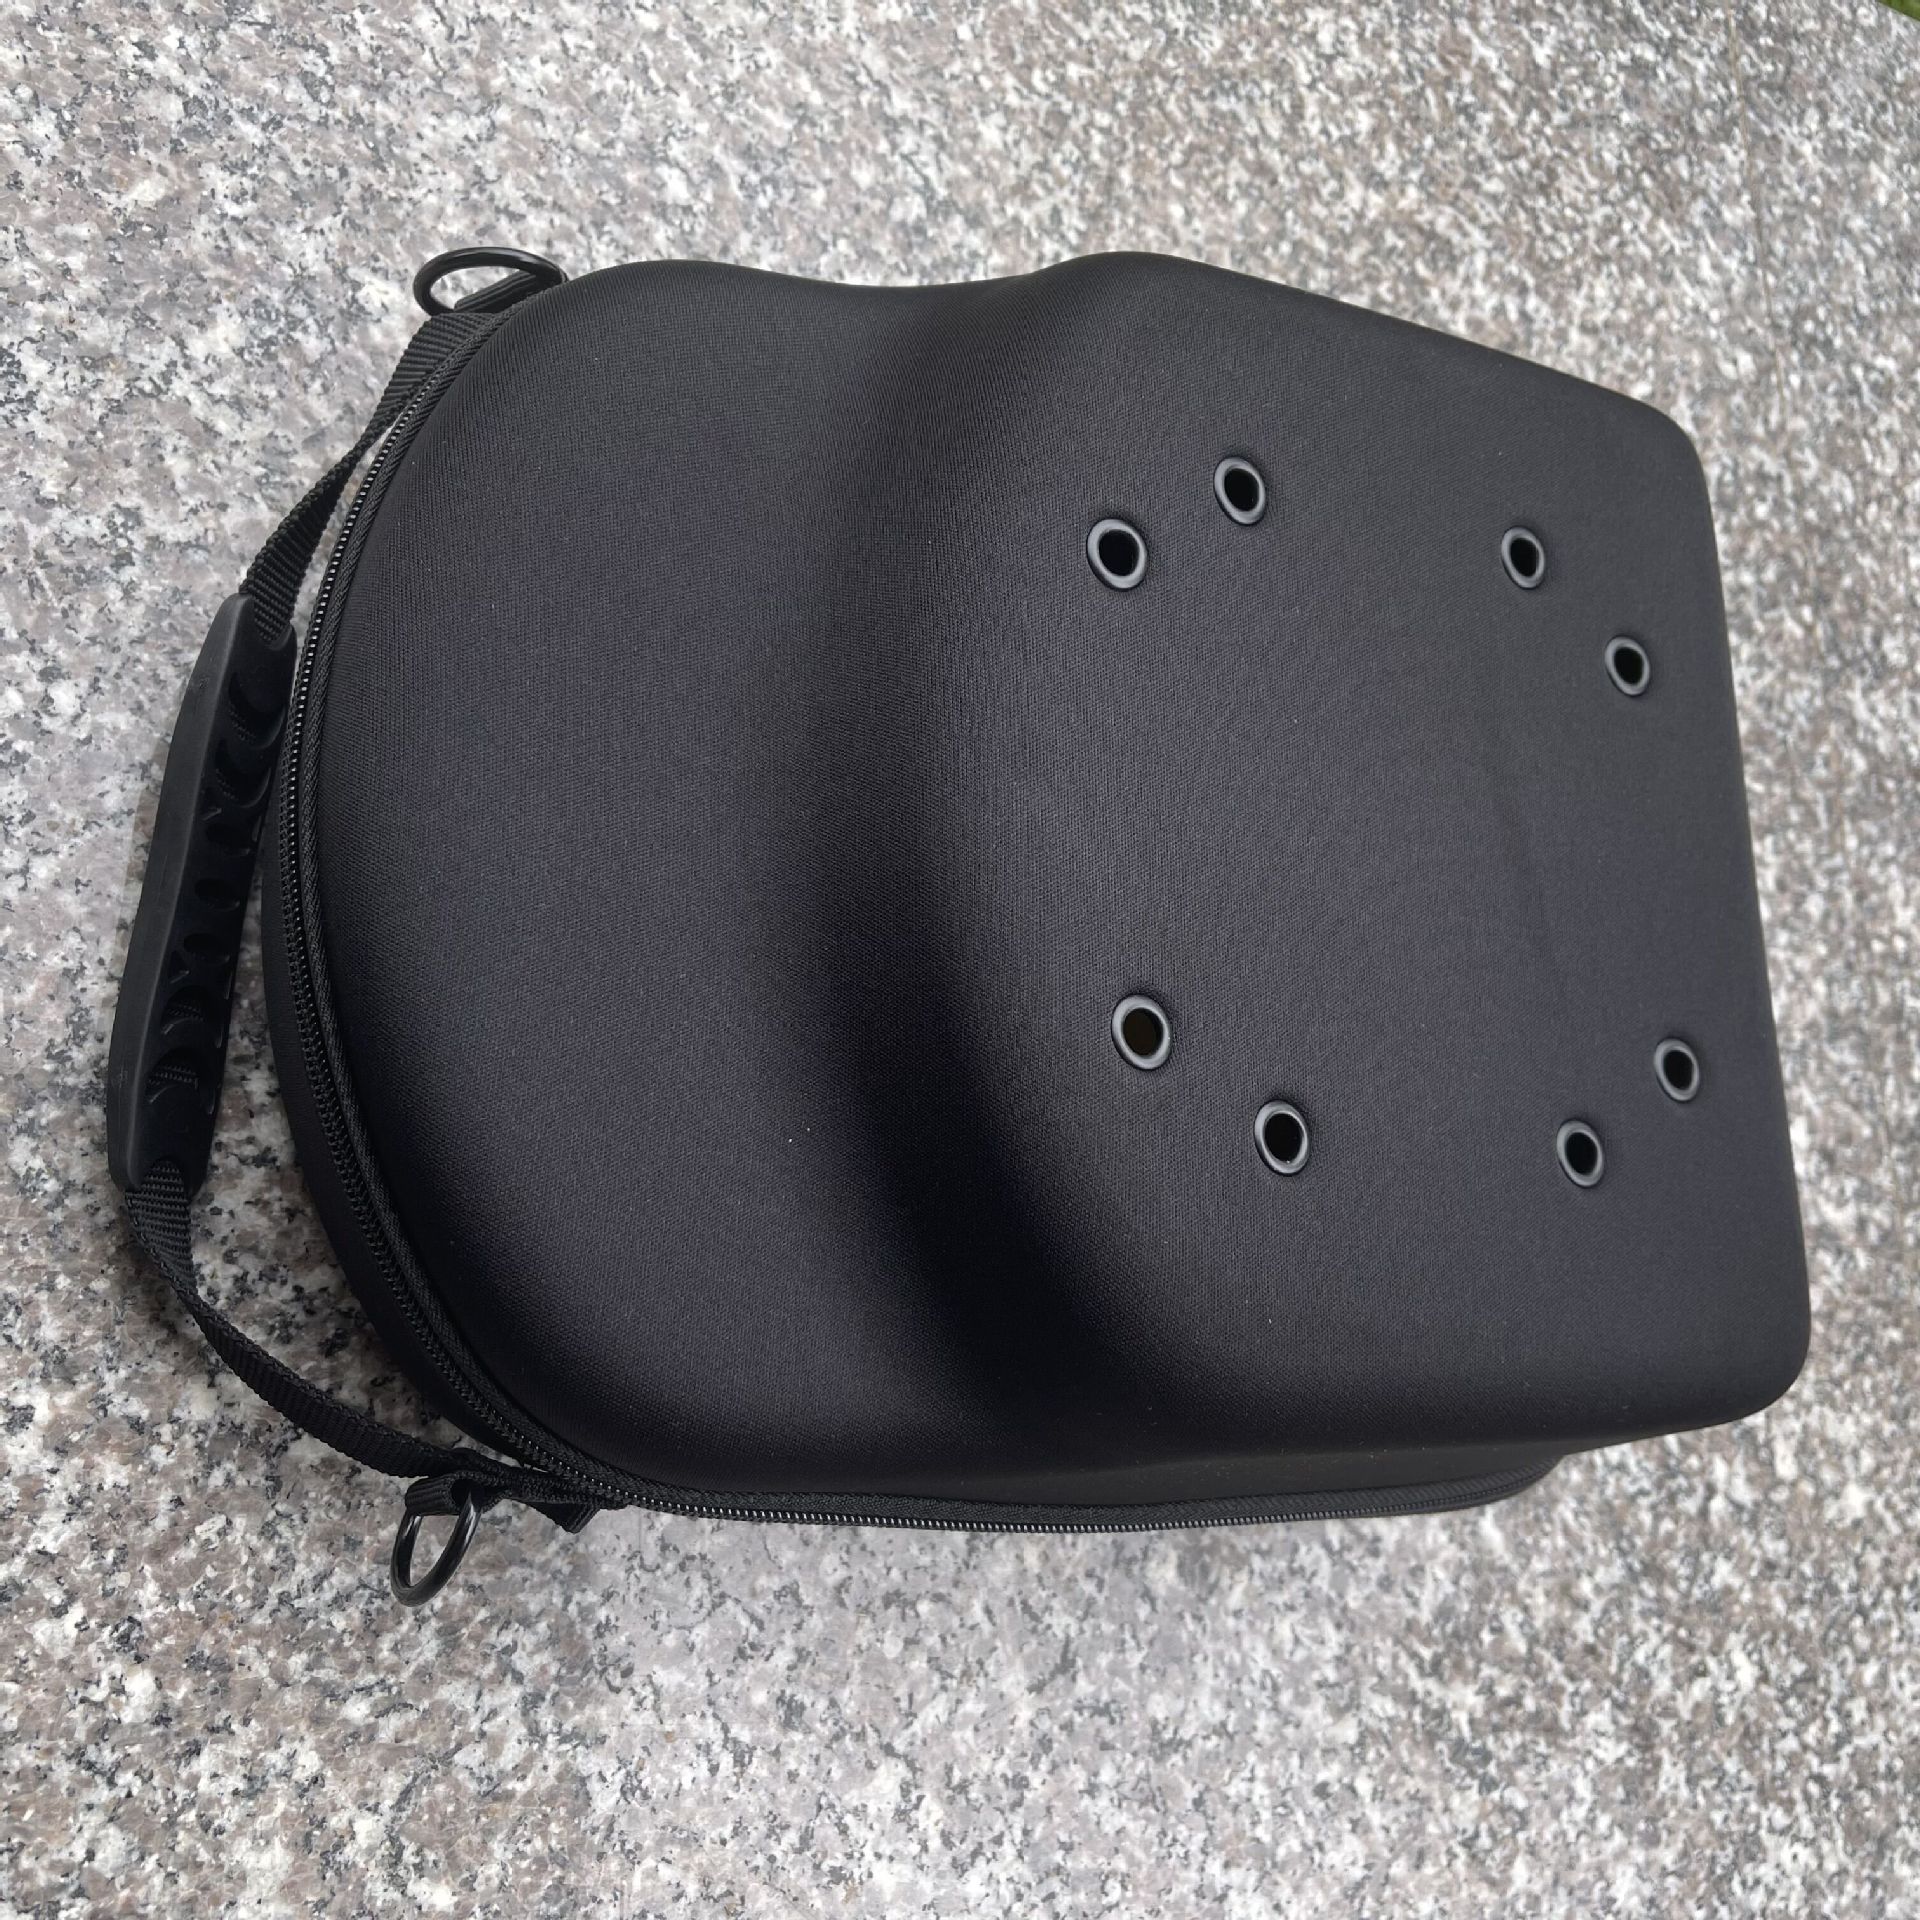 Source Factory in Stock Eva Hats Storage Bag Baseball Cap Bag Peaked Cap Bag Portable Cap Bag Eva Cap Box